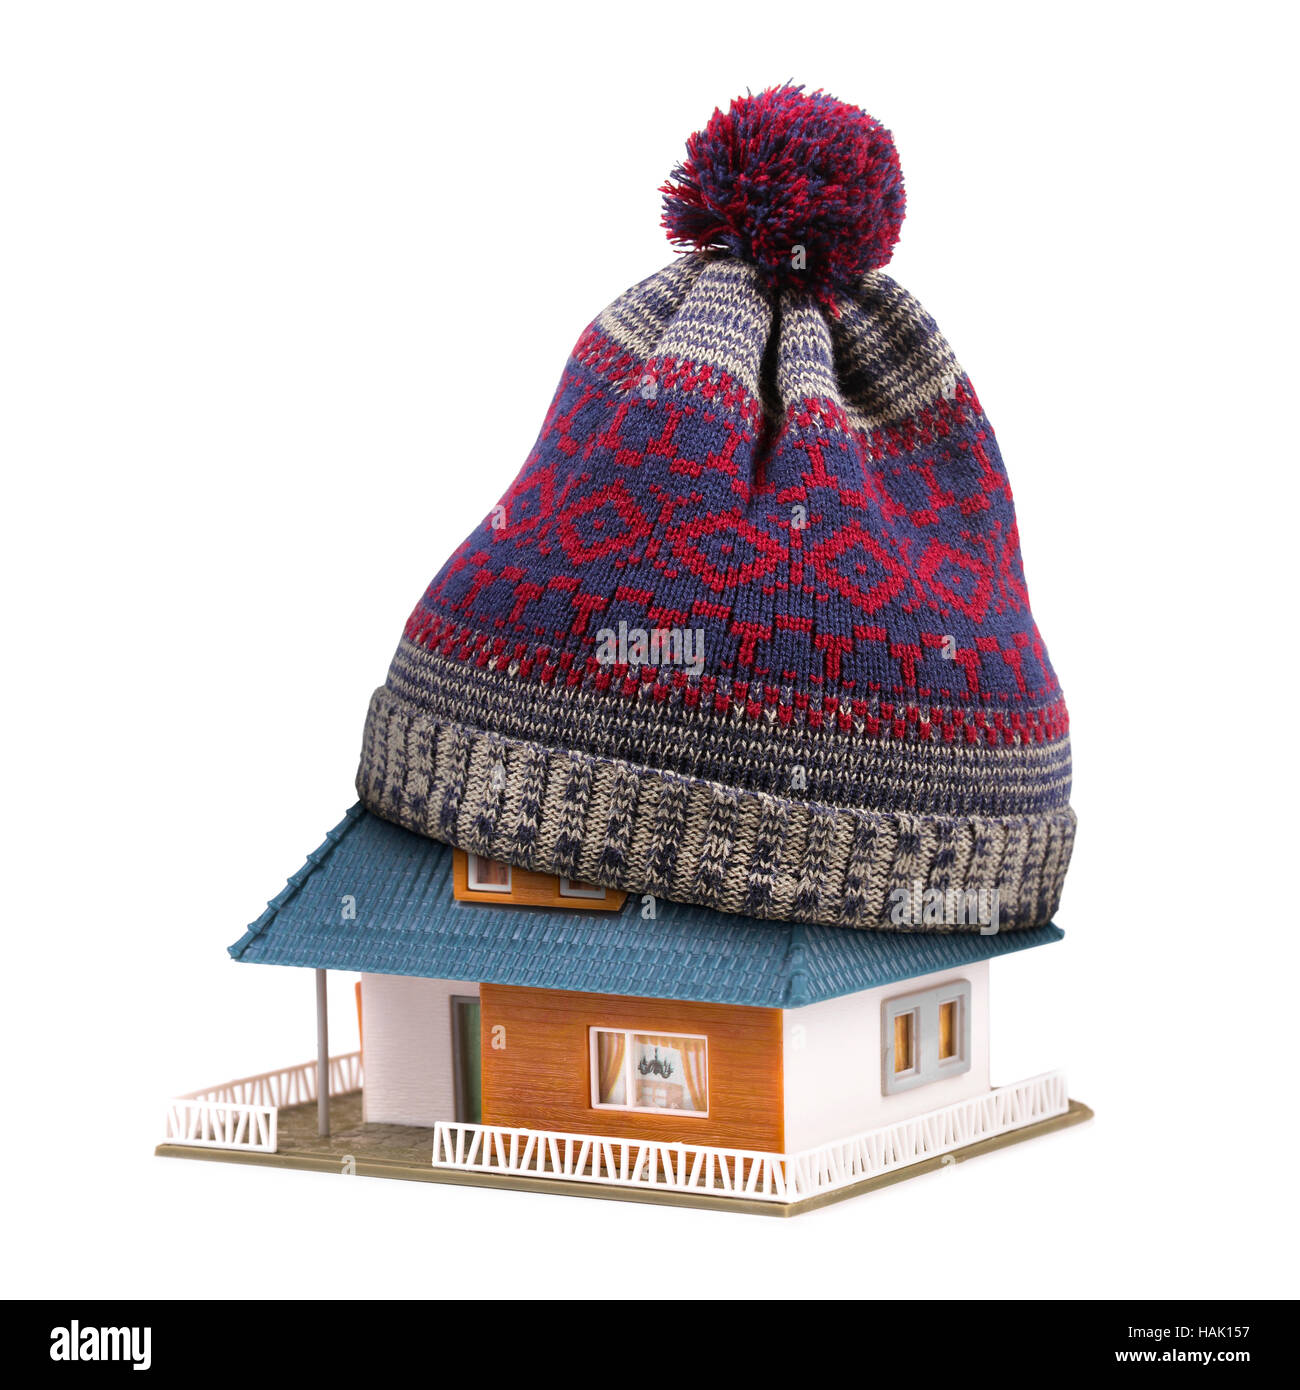 Accueil isolation ou concept d'assurance. hat sur toit de maison isolated on white Banque D'Images